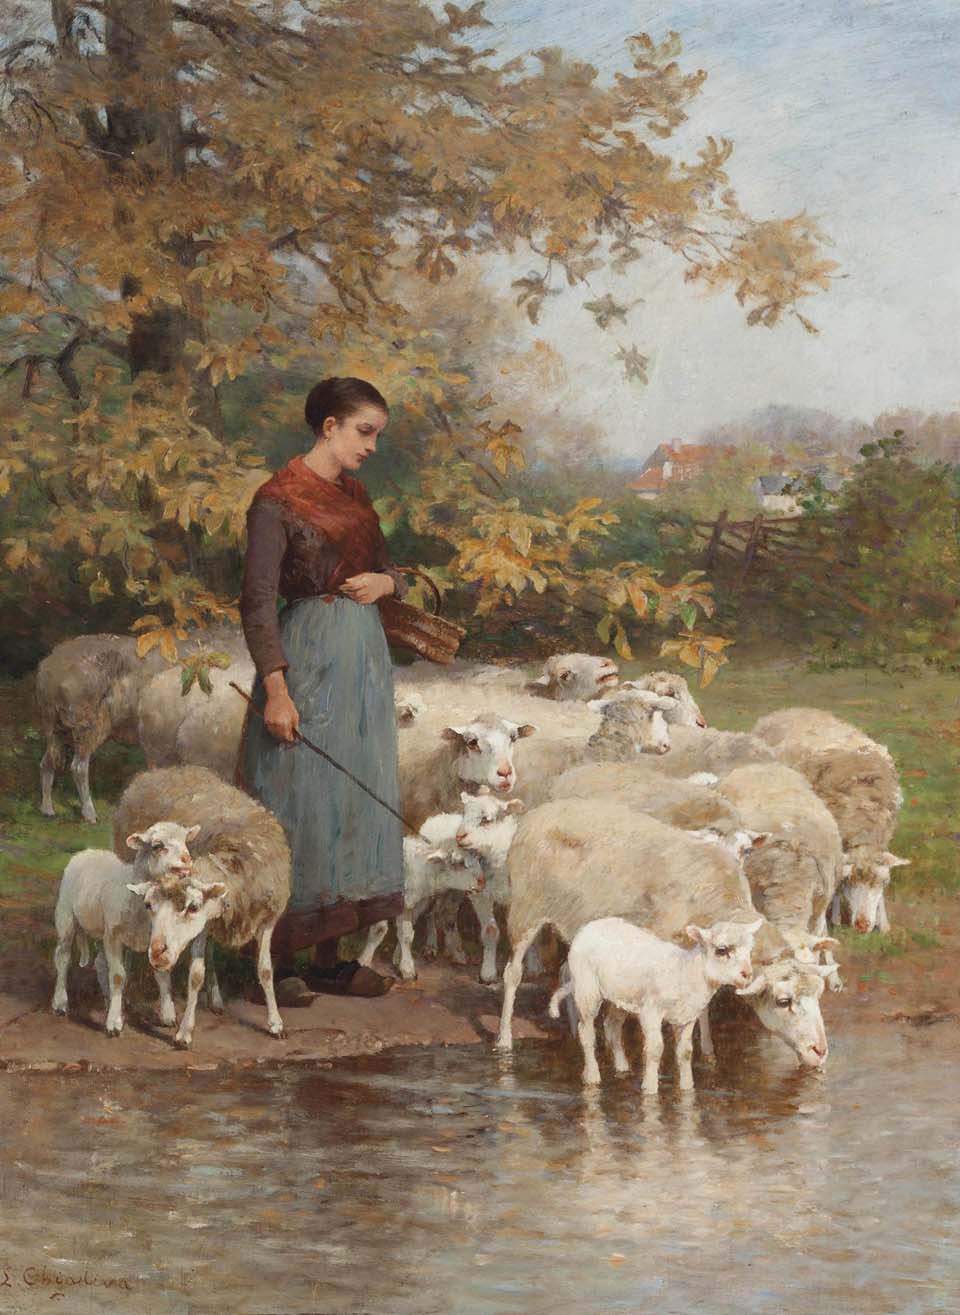 A shepherdess watering her flock